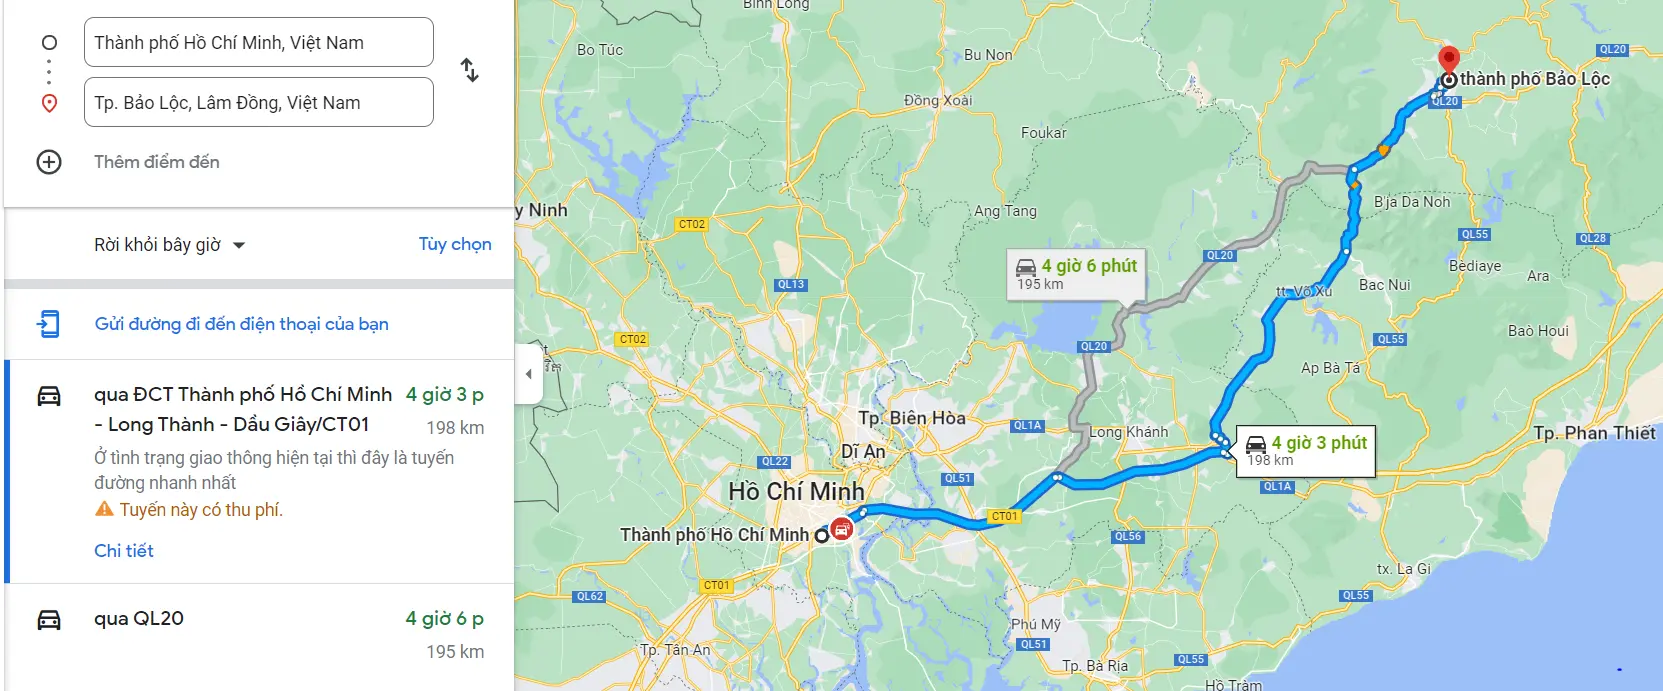 Khoảng cách từ Sài Gòn đến Bảo Lộc là 195km qua quốc lộ 20